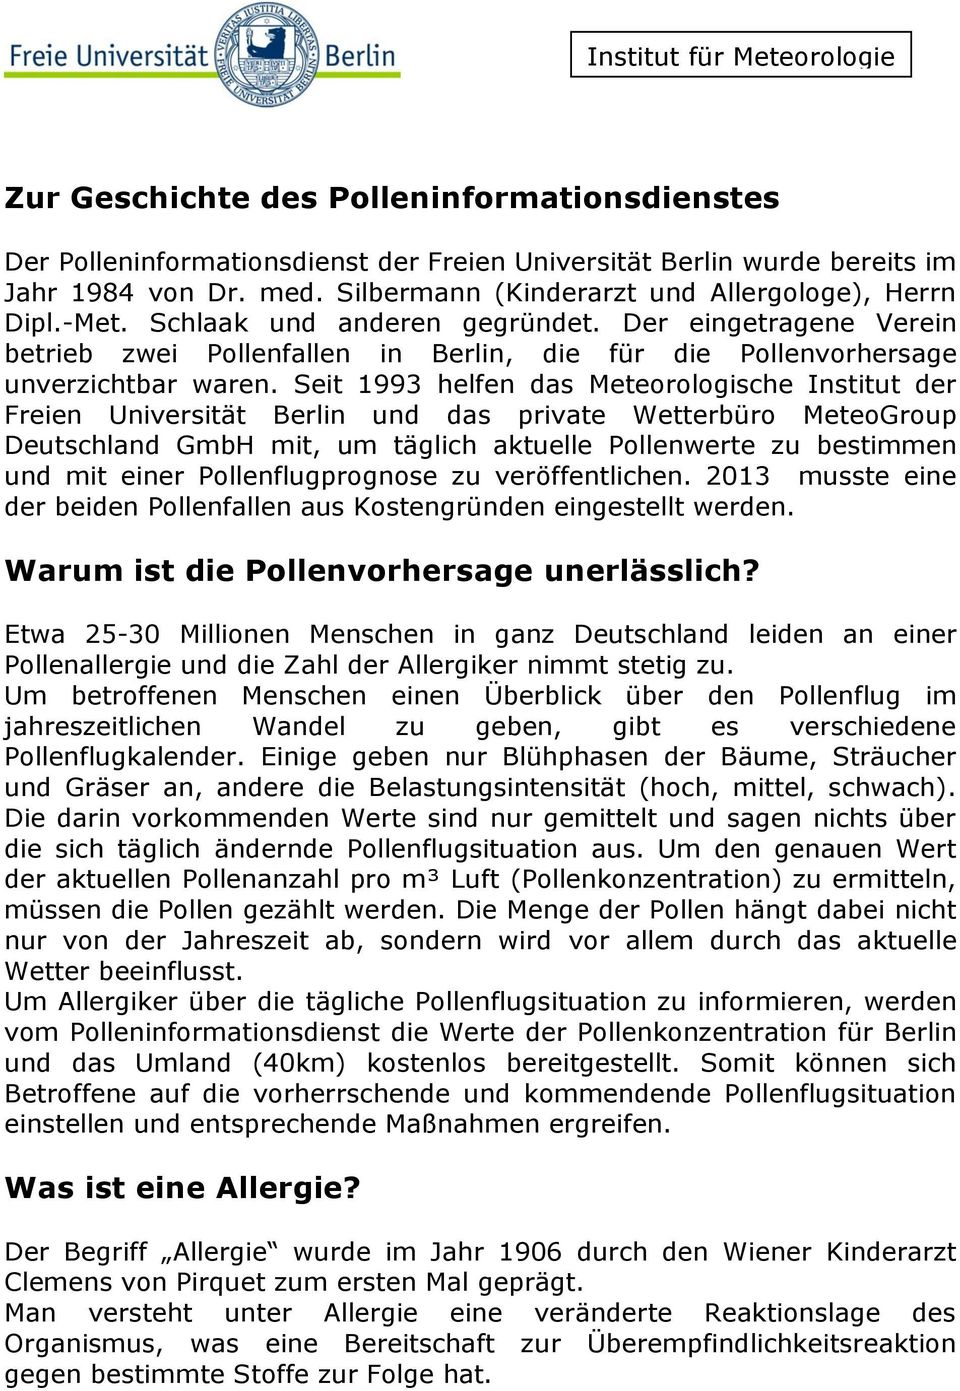 Seit 1993 helfen das Meteorologische Institut der Freien Universität Berlin und das private Wetterbüro MeteoGroup Deutschland GmbH mit, um täglich aktuelle Pollenwerte zu bestimmen und mit einer